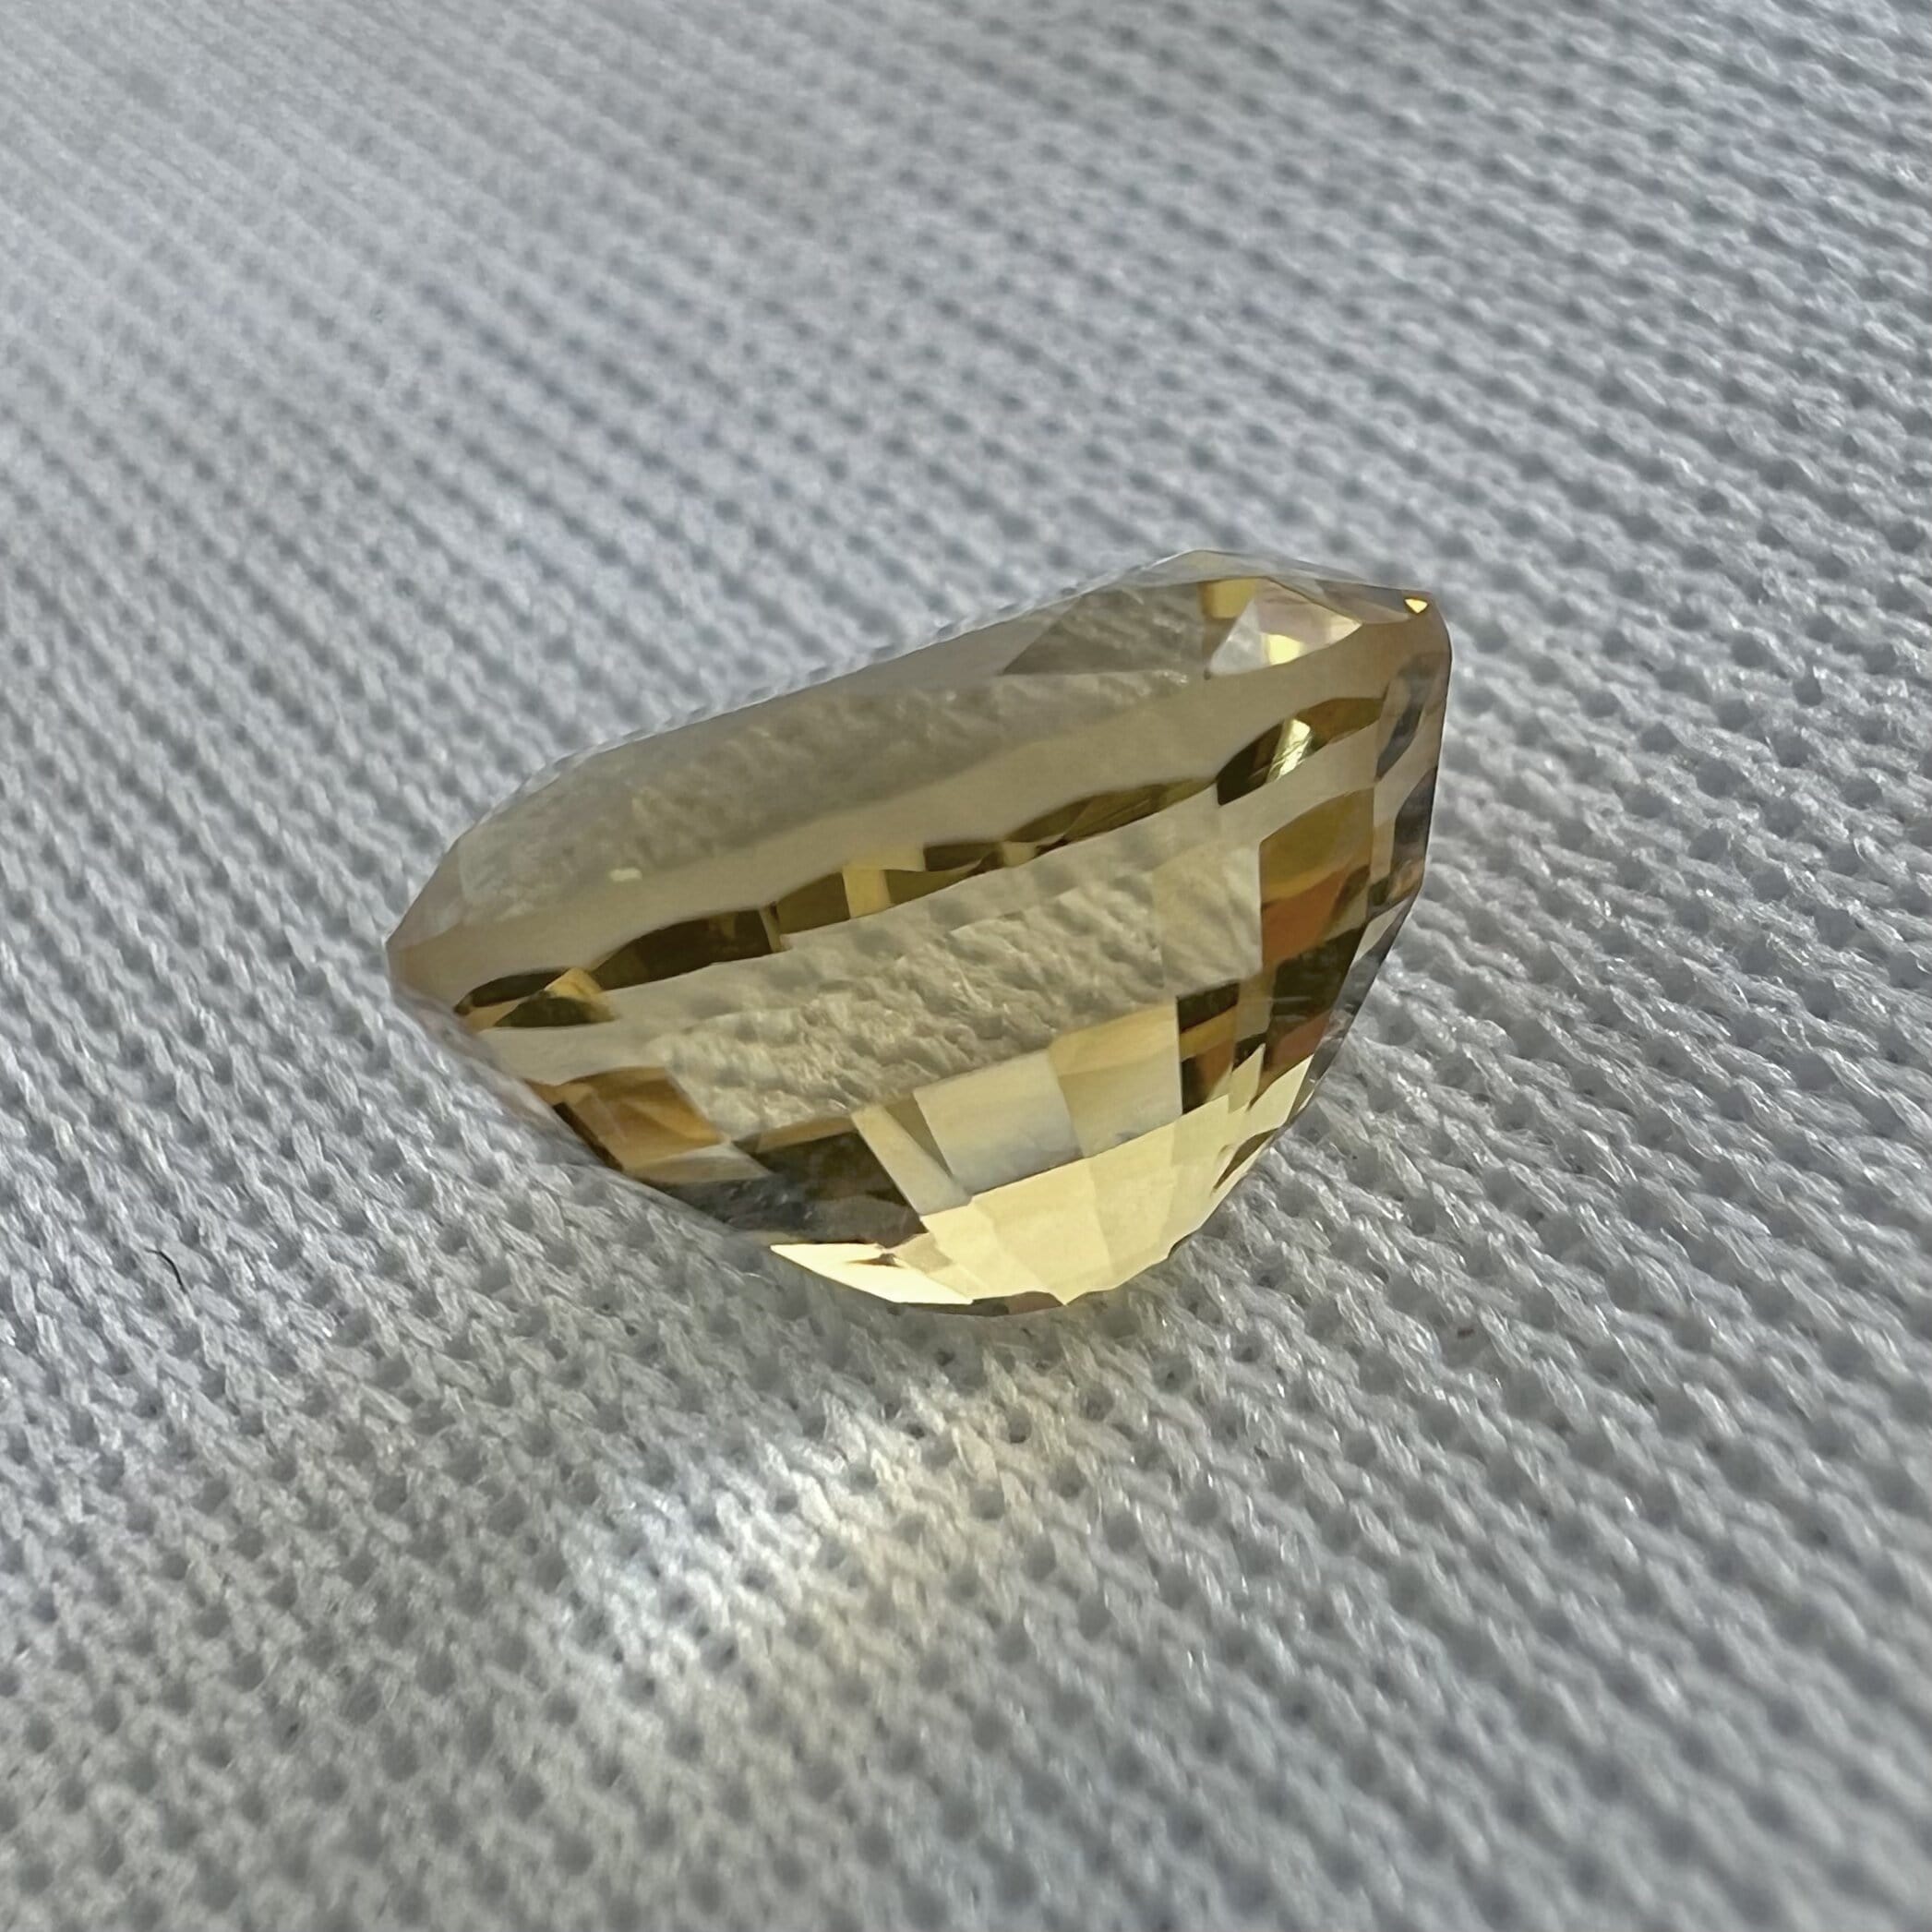 Citrino Dorado-3.00ct-10x8x6.1mm